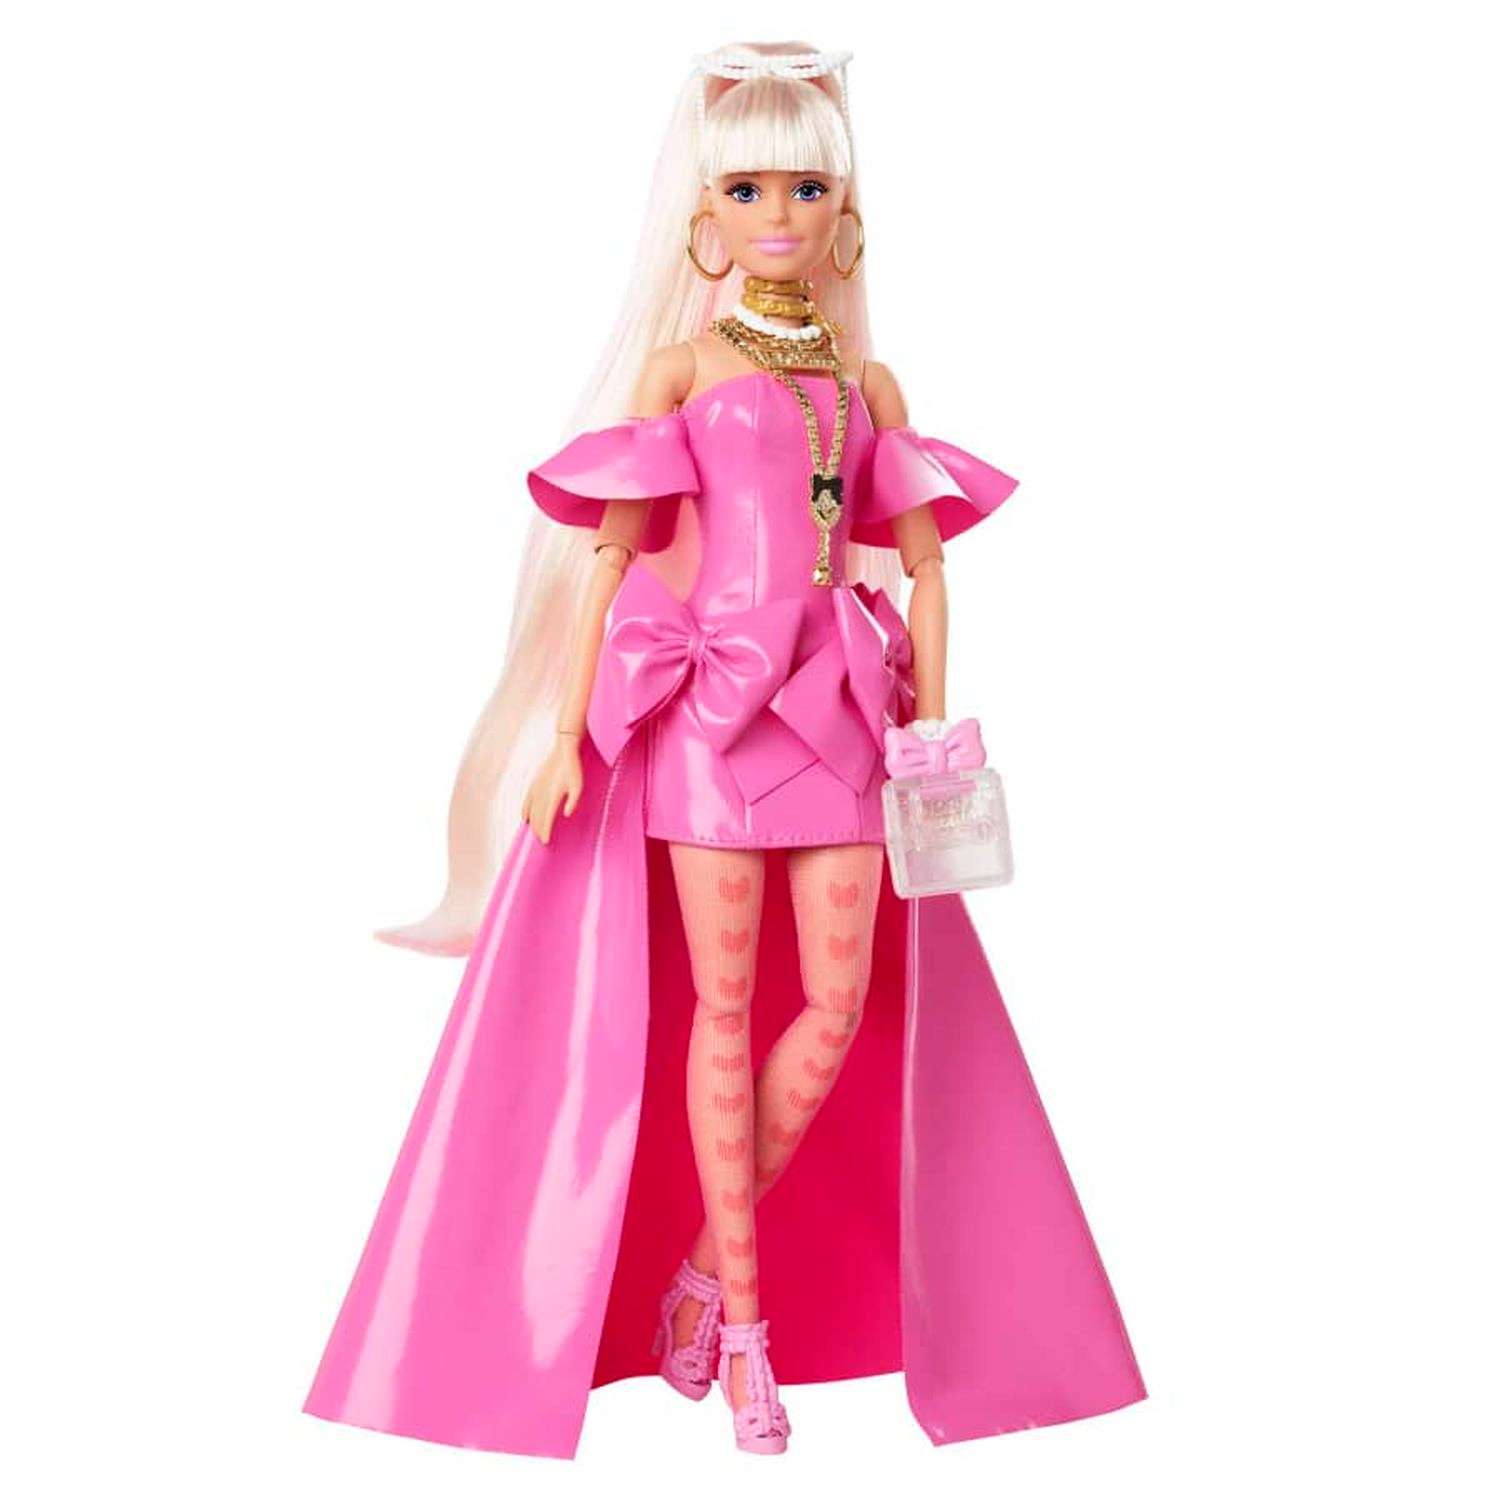 Куклы Барби купить в Минске недорого Barbie